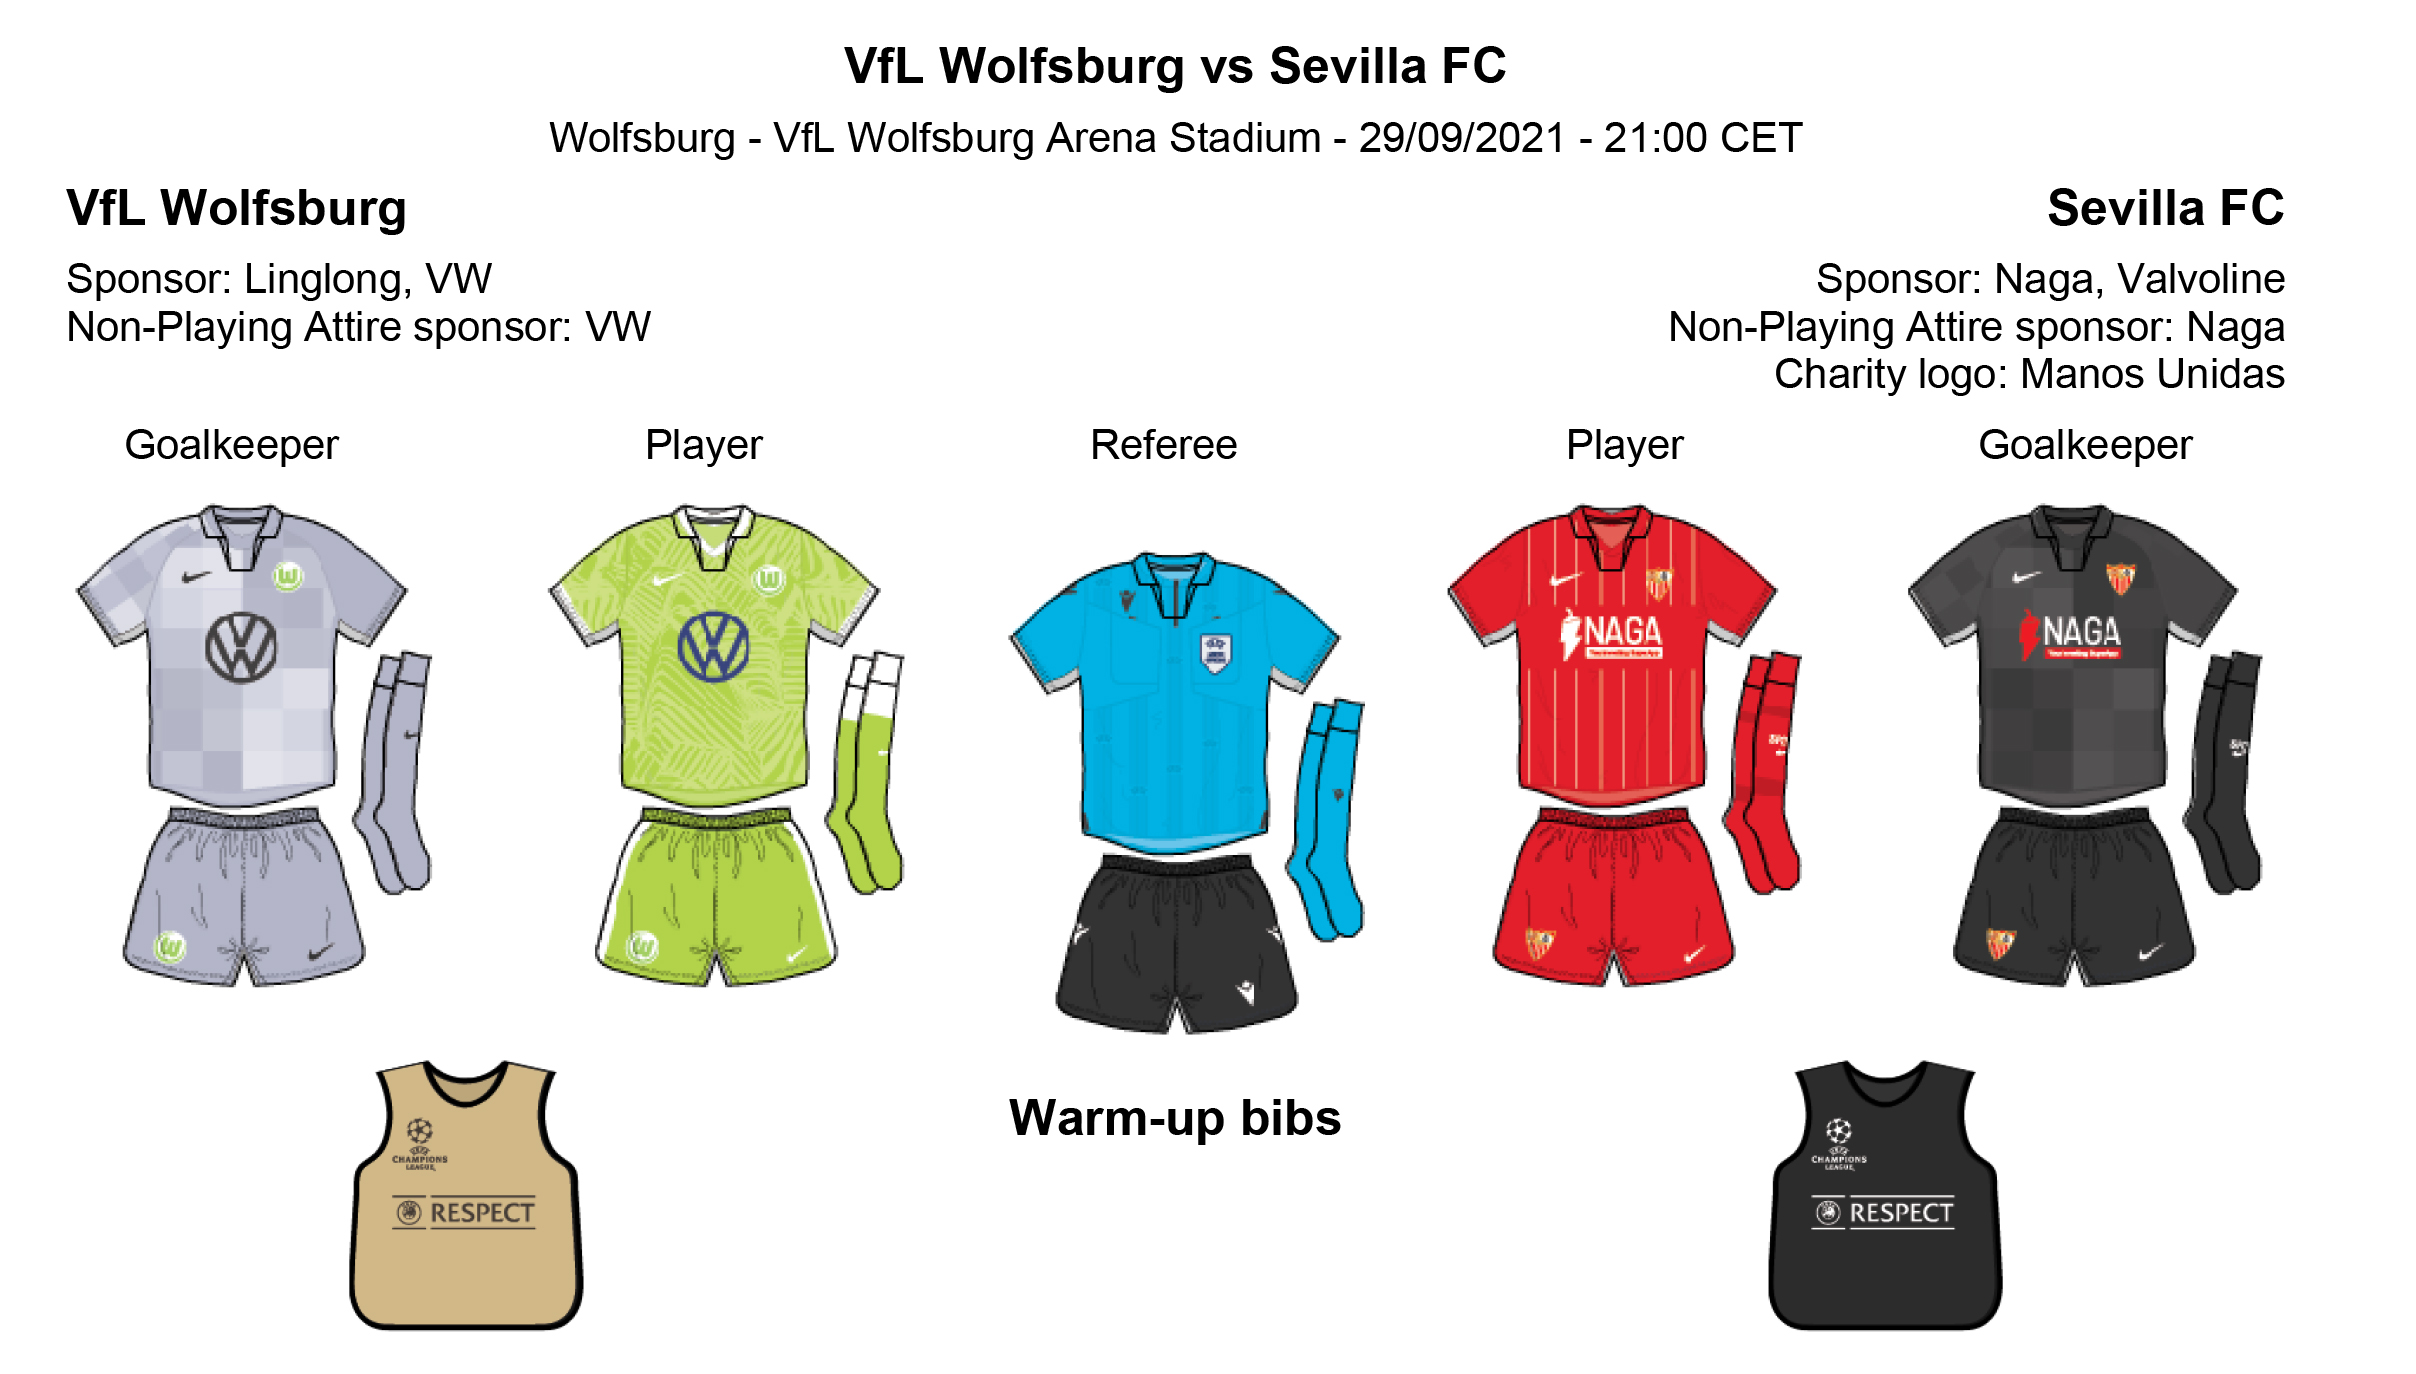 The kits for VfL Wolfsburg vs Sevilla FC